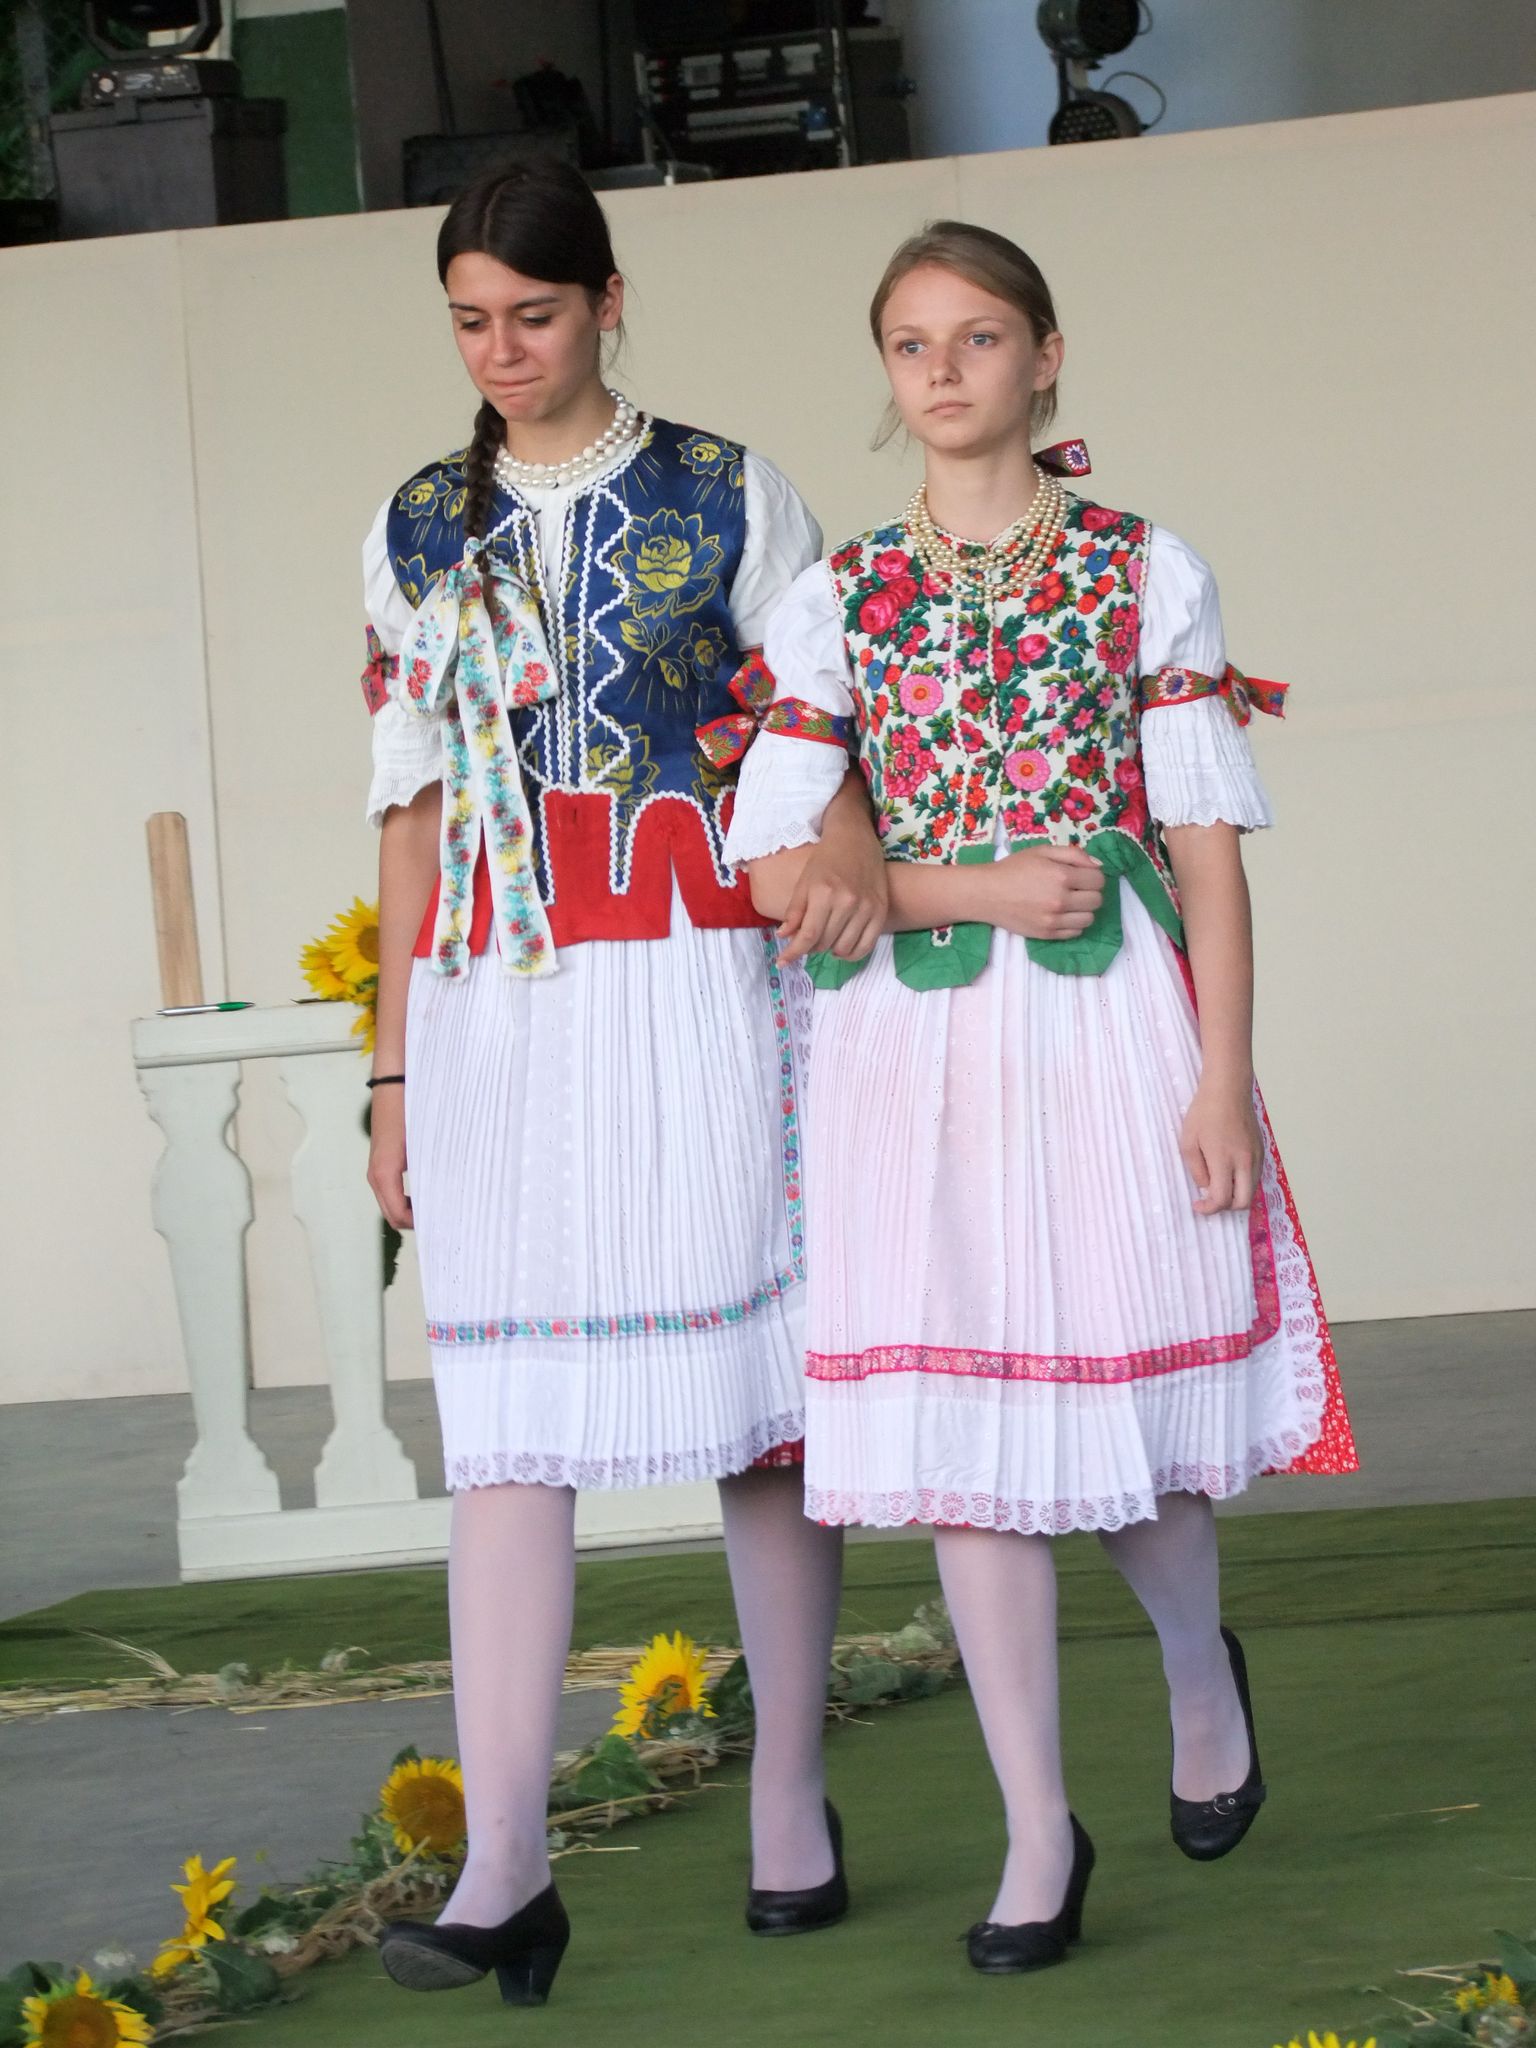 Pogrányi lányok ünnepi viseletben (Fotó: TK)